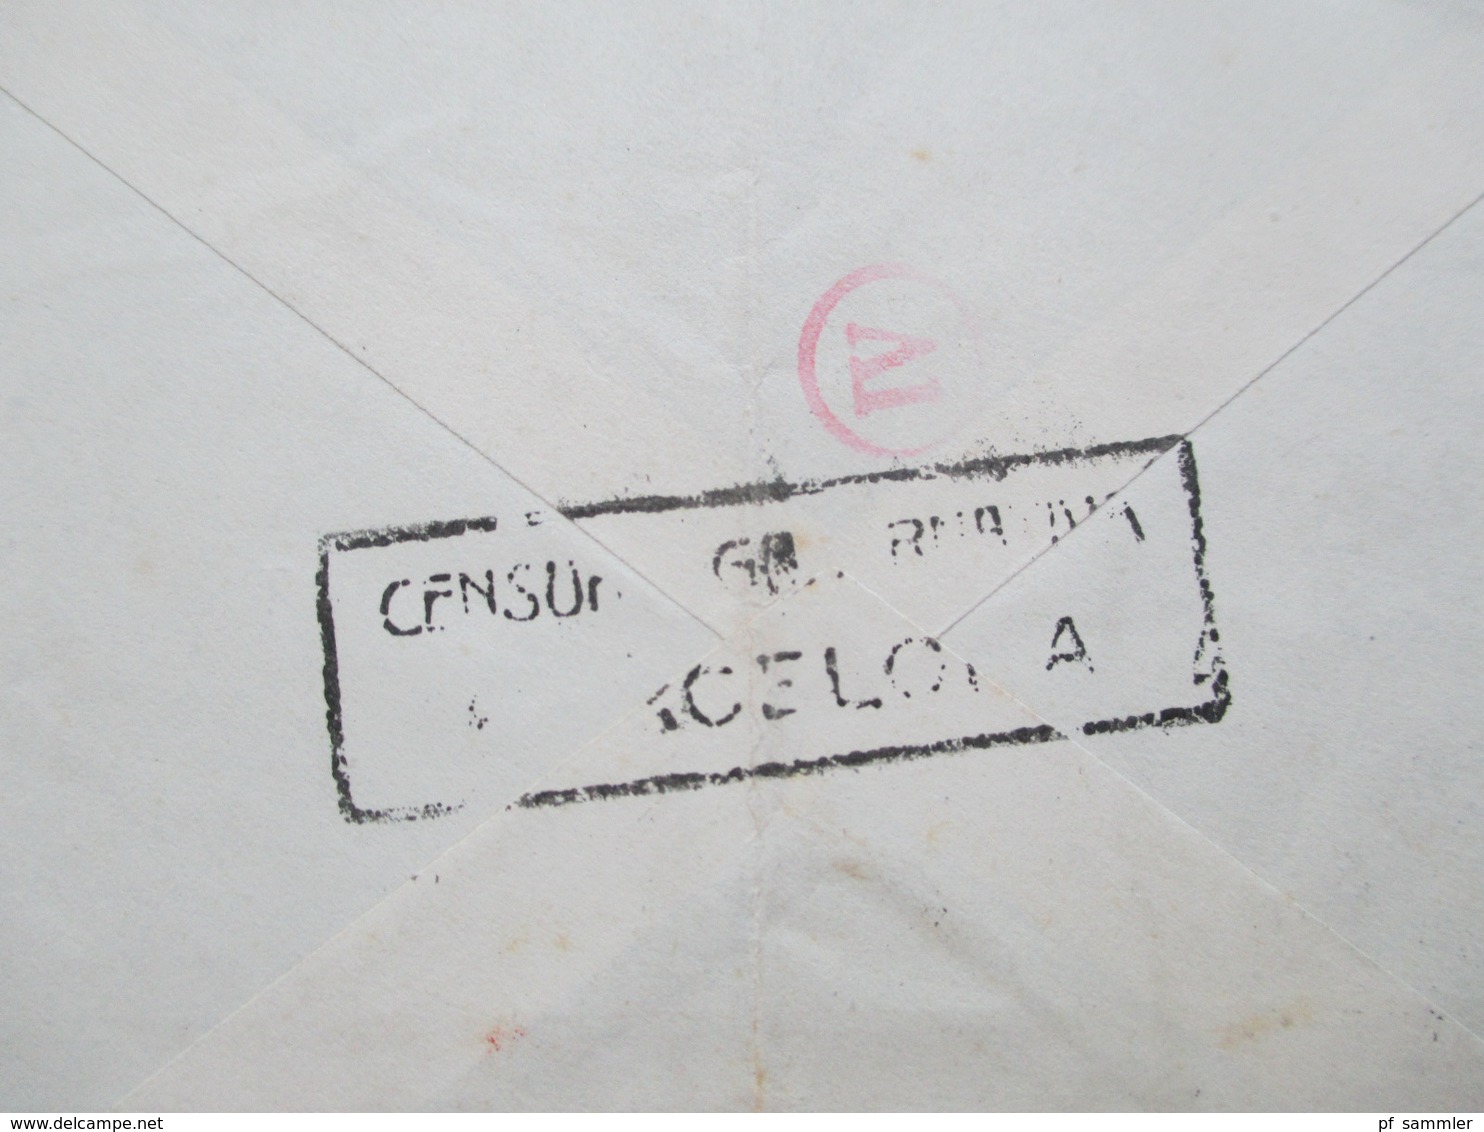 Spanien 1943 Luftpostbrief Barcelona - Berlin Mit Spanischer Zensur Und OKW Zensur Censura Barcelona Mehrfachzensur - Lettres & Documents